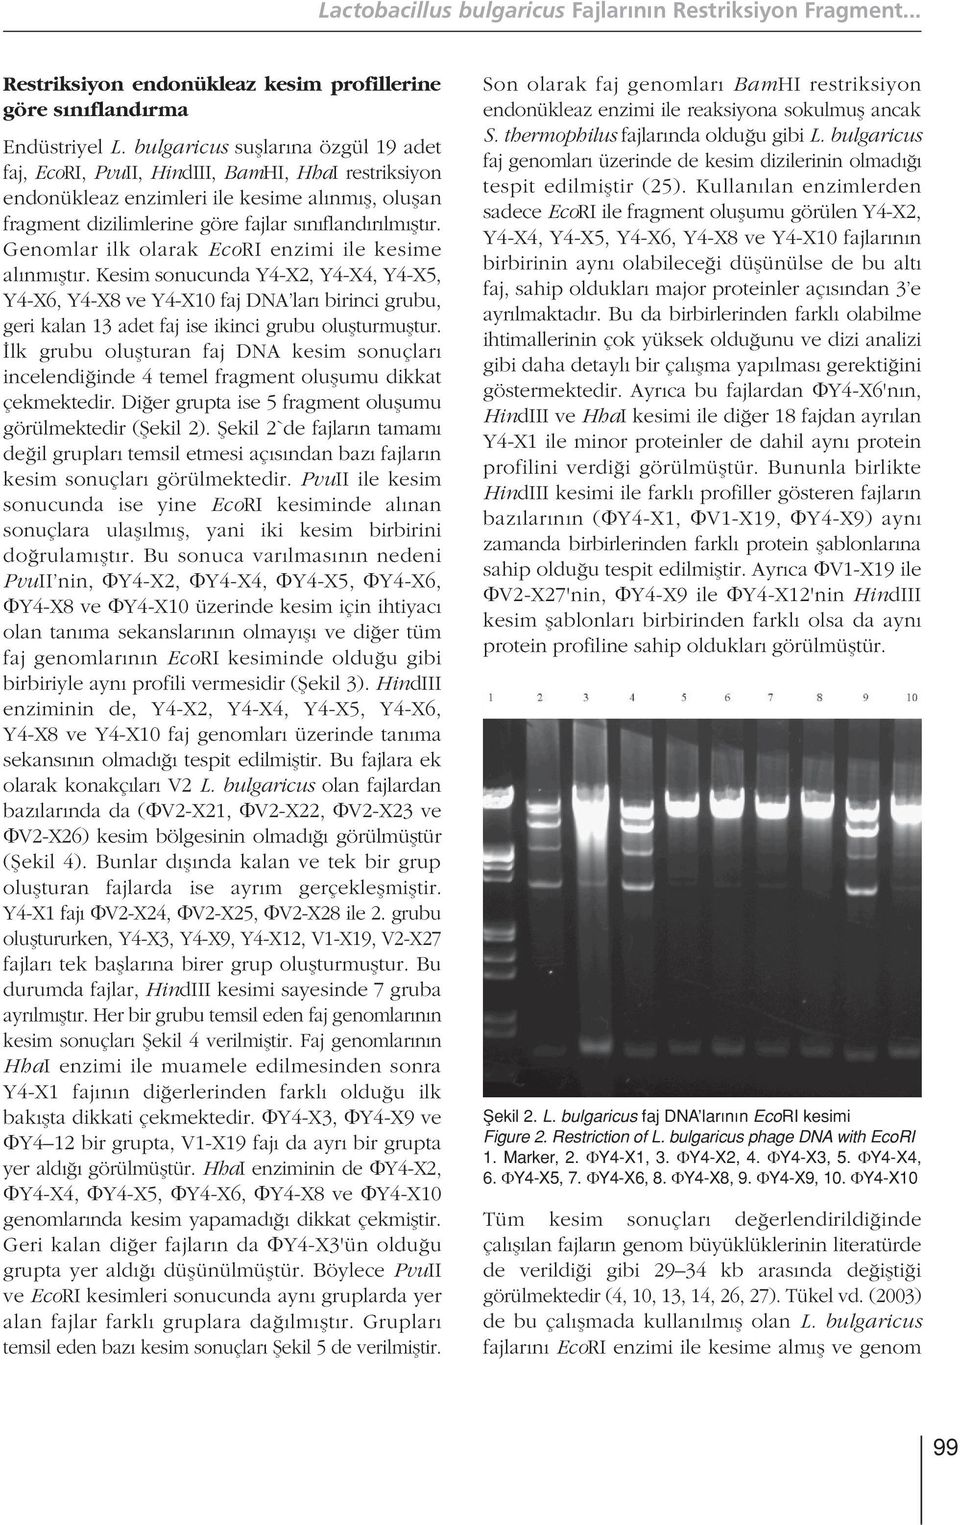 Genomlar ilk olarak EcoRI enzimi ile kesime al nm flt r. Kesim sonucunda Y4-X2, Y4-X4, Y4-X5, Y4-X6, Y4-X8 ve Y4-X10 faj DNA lar birinci grubu, geri kalan 13 adet faj ise ikinci grubu oluflturmufltur.